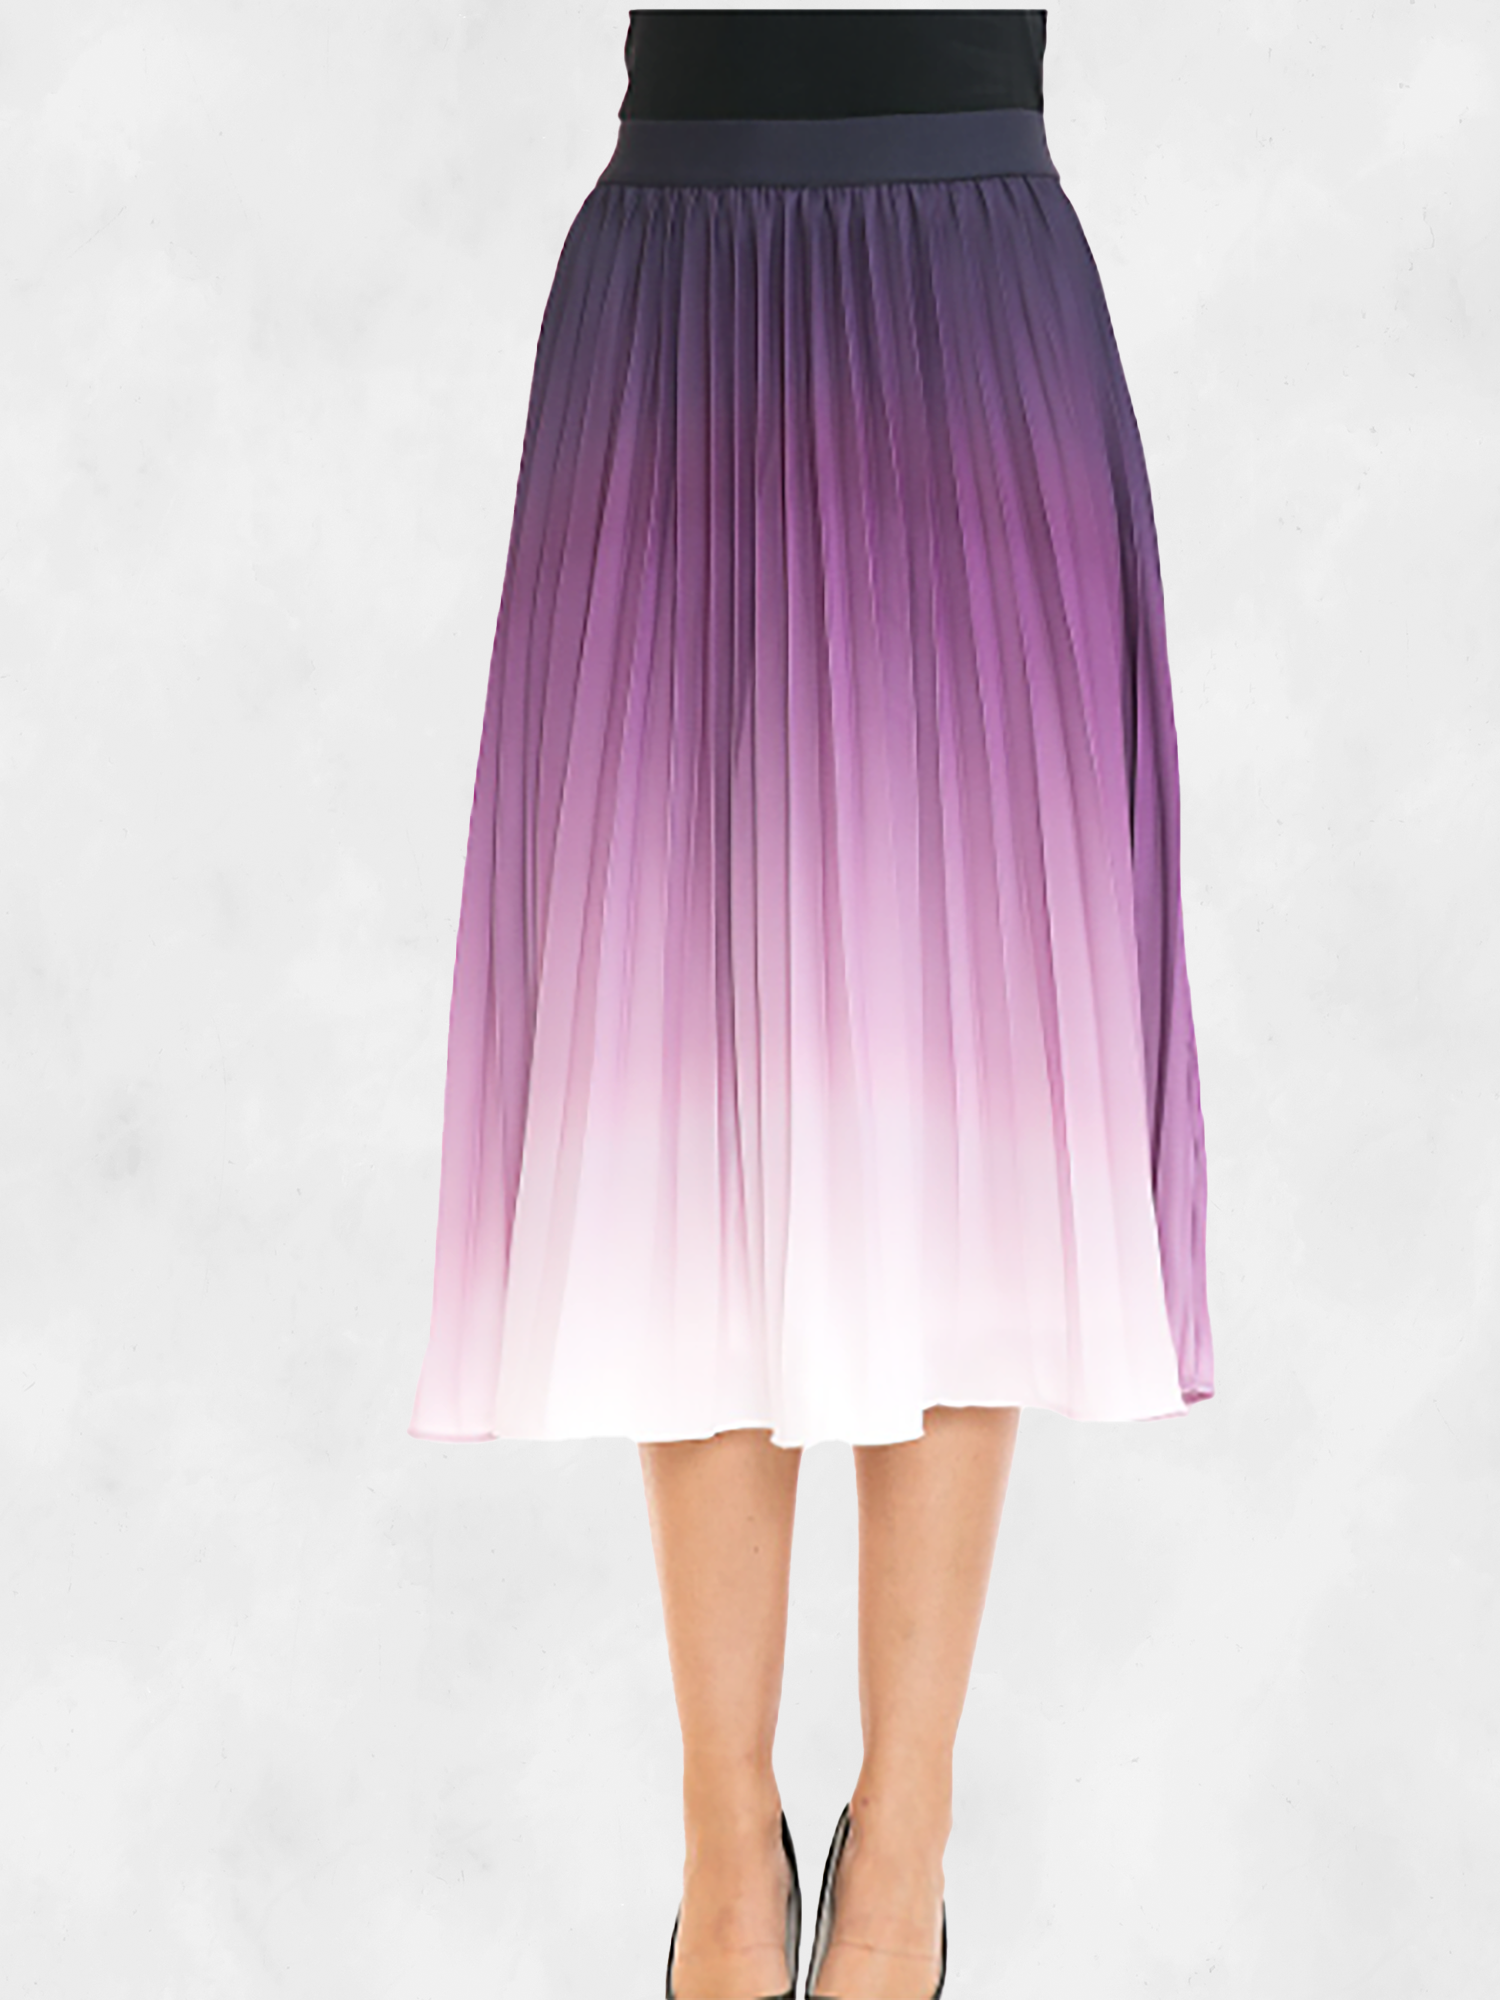 ANNVA USA High Waist Pleated A-line Swing Skirt